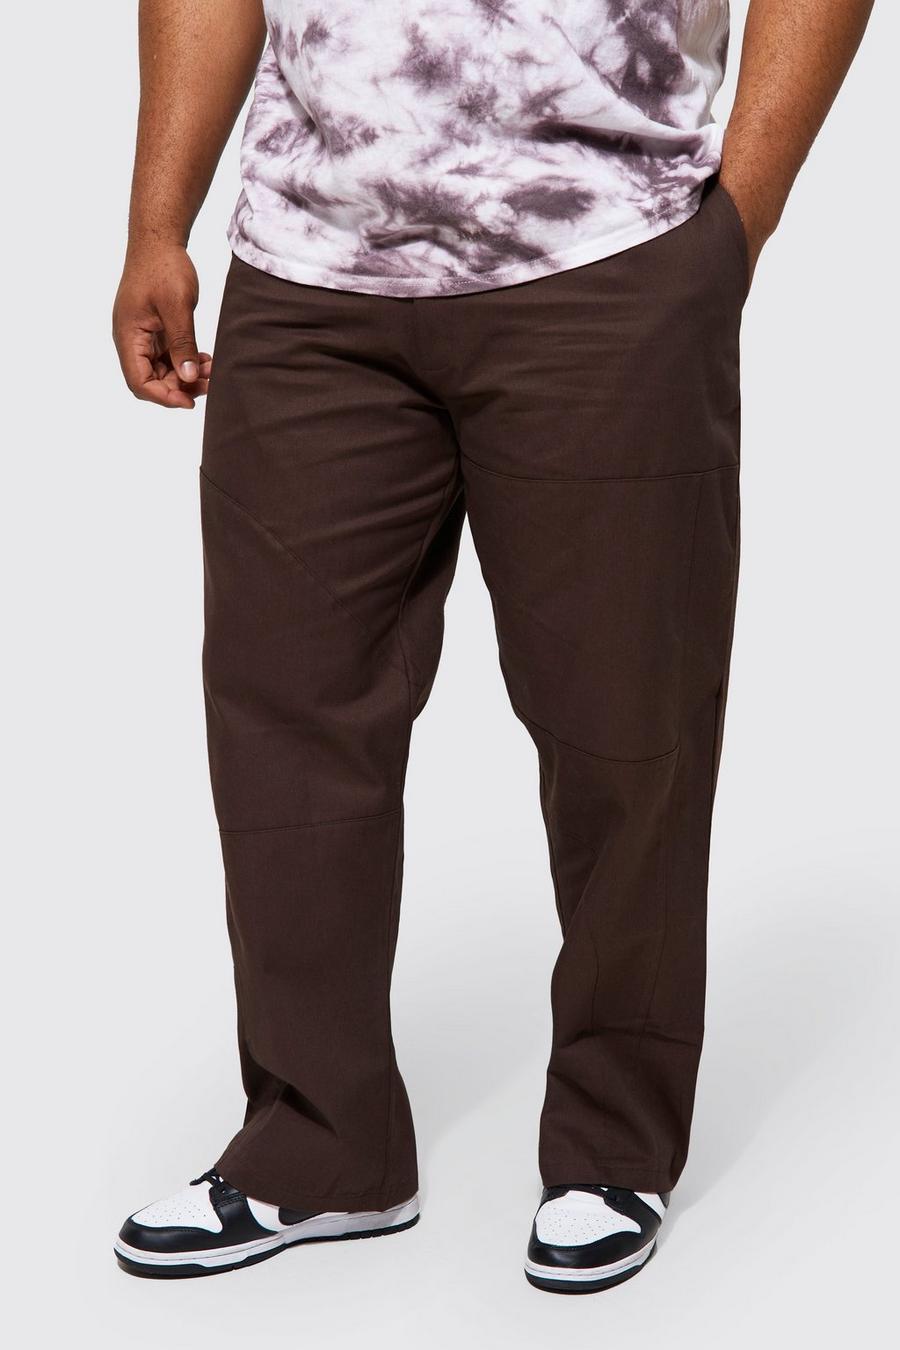 Grande taille - Pantalon droit à coutures apparentes, Chocolate brown